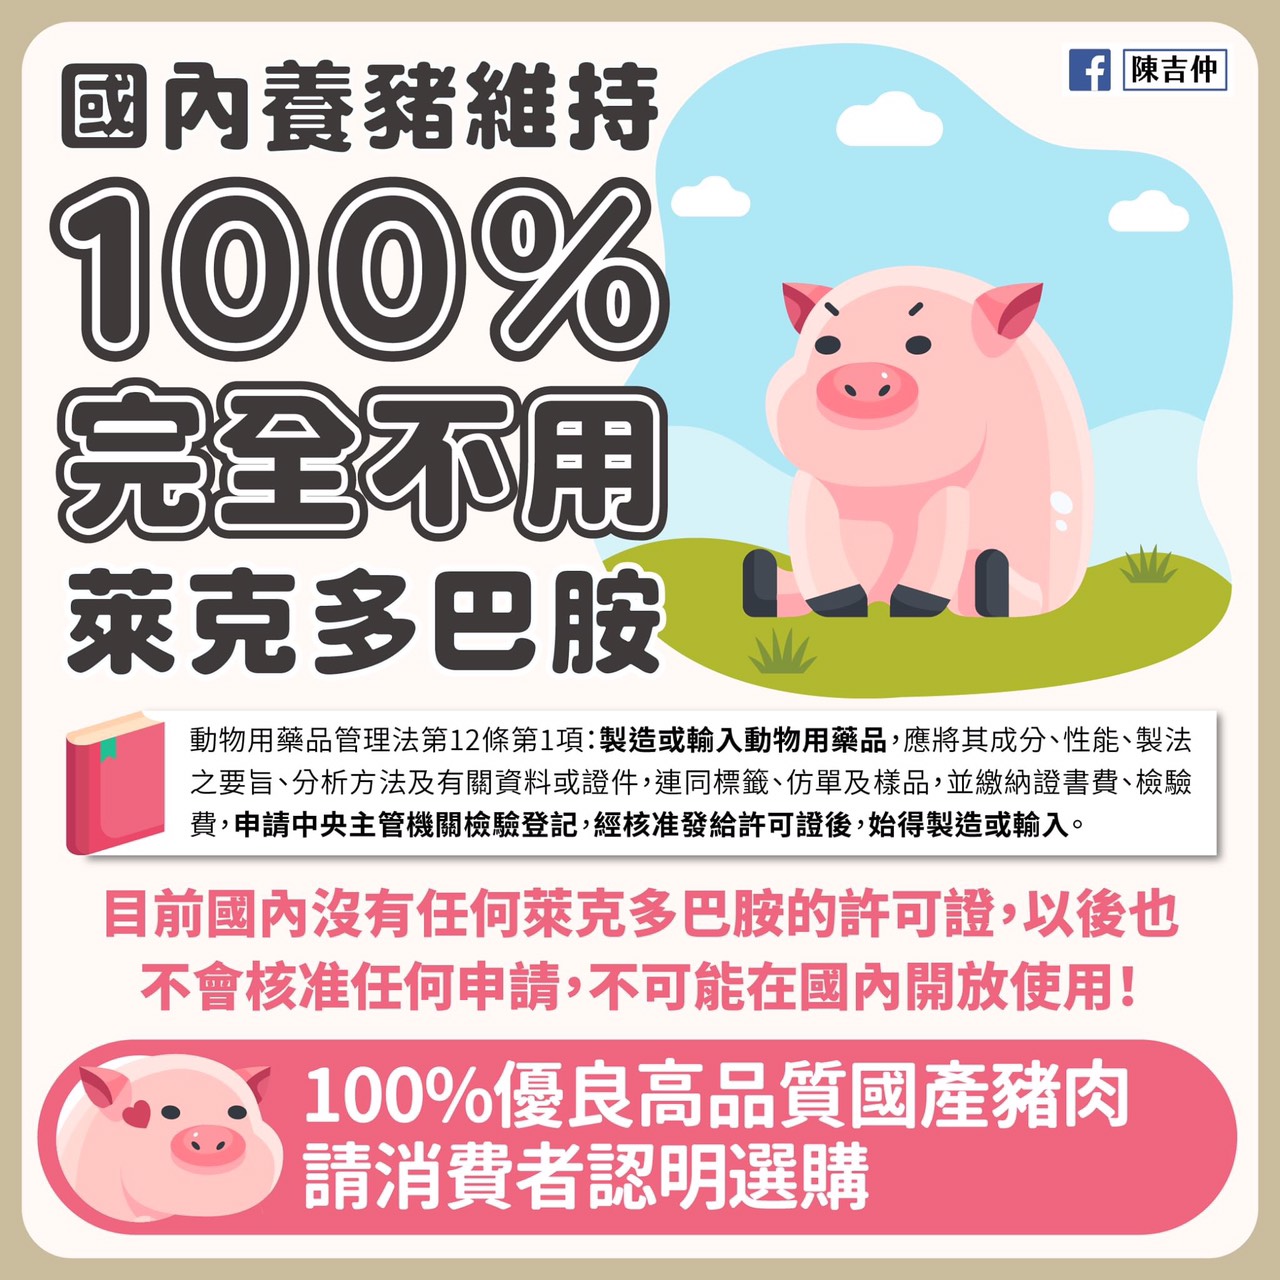 國內養豬維持100%完全不用萊克多巴胺-另開新視窗